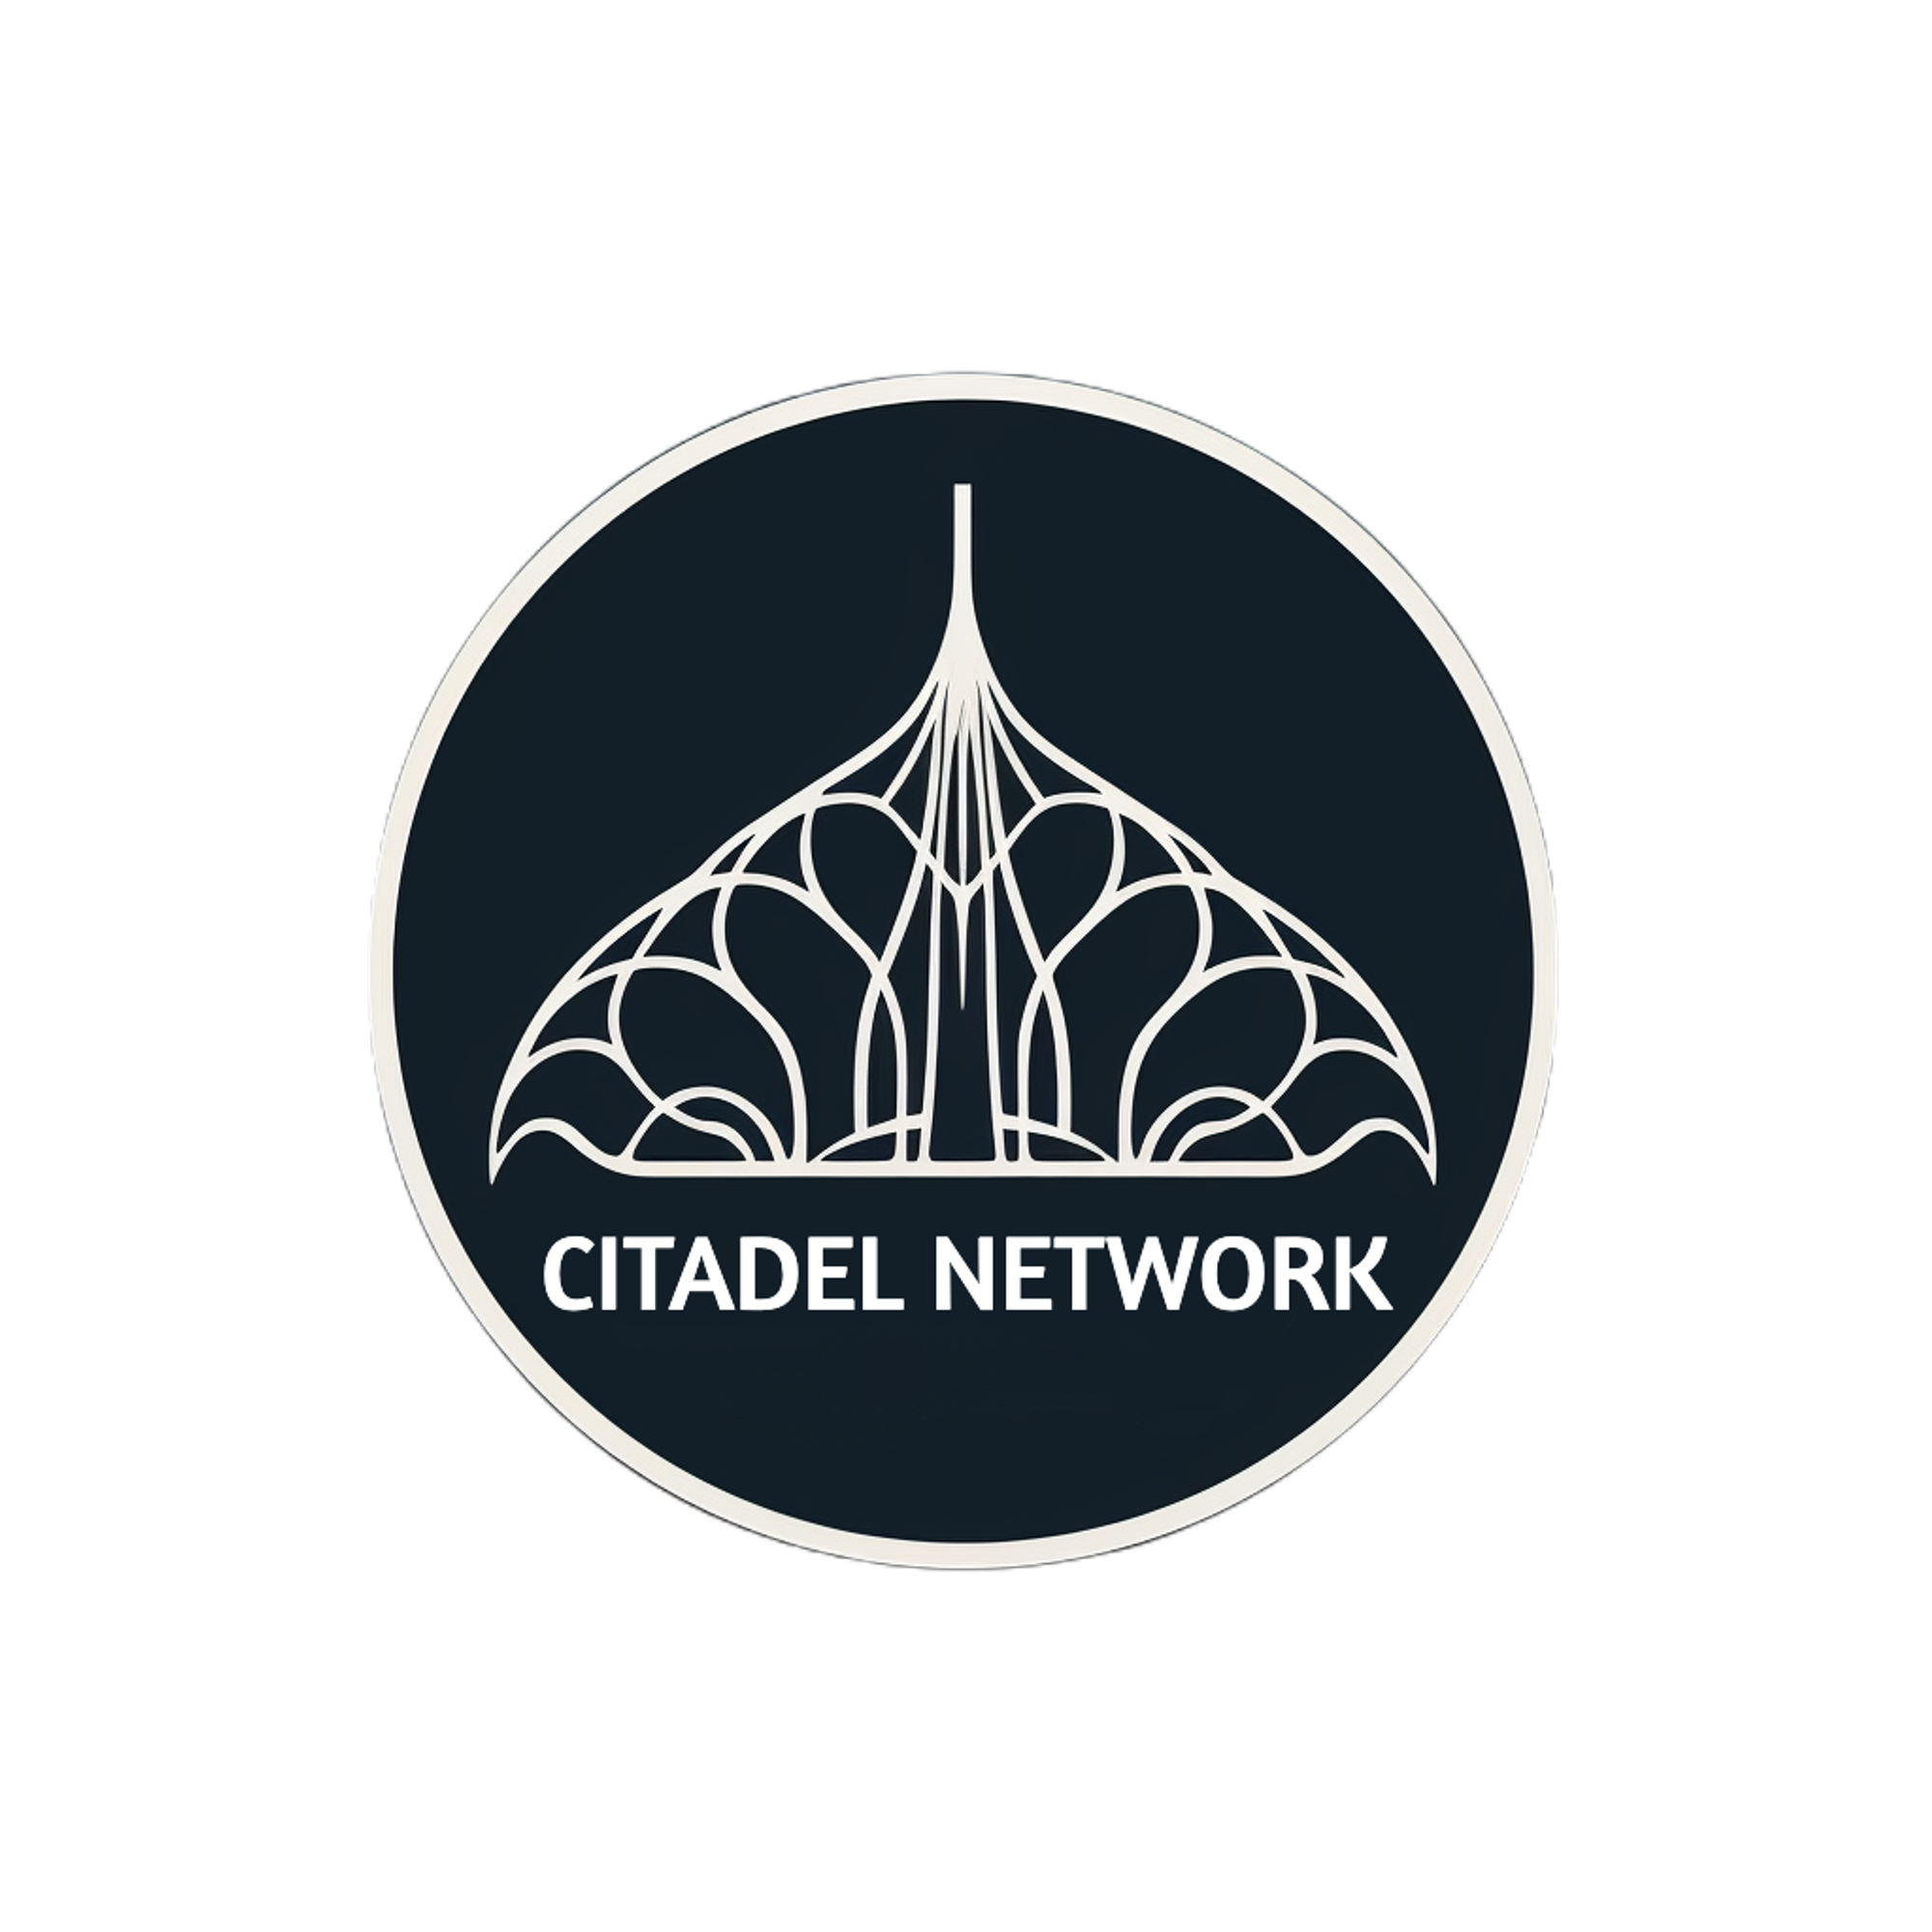 Citadel Network